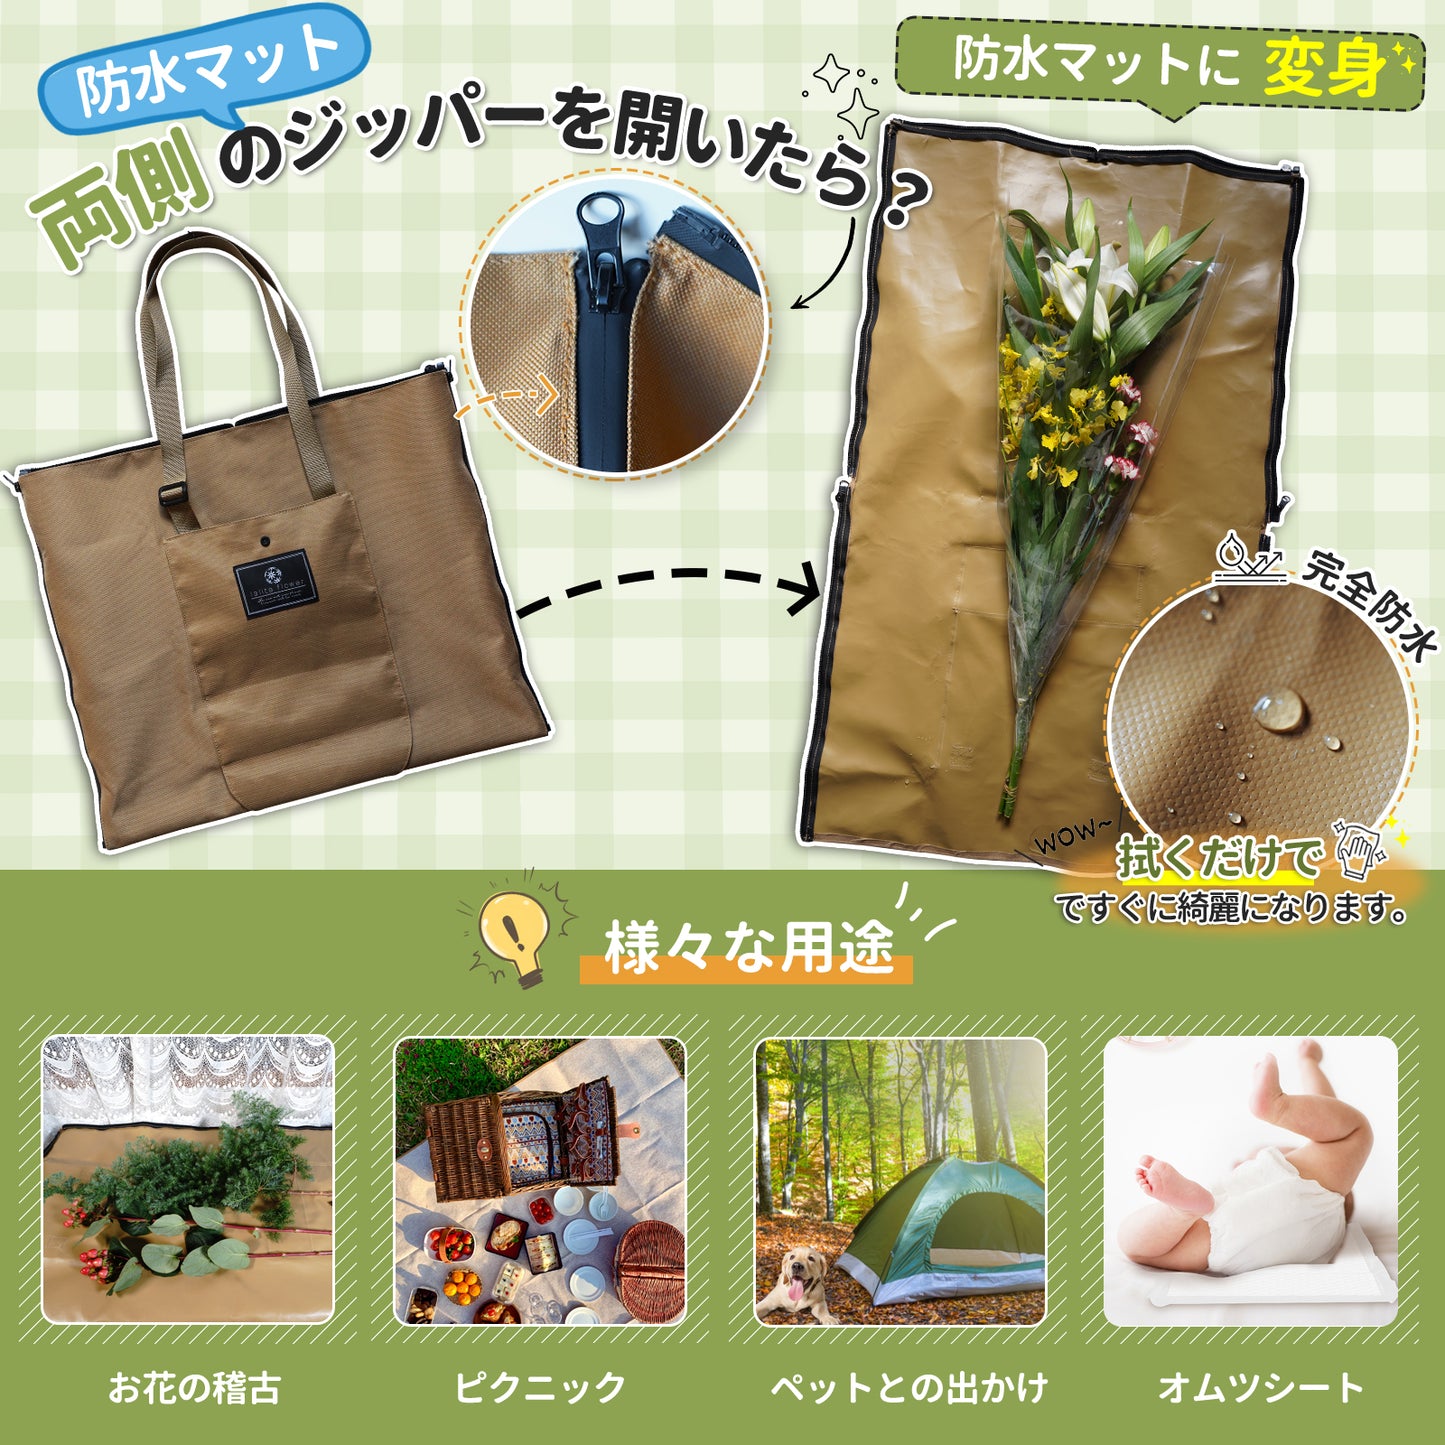 【特許出願中】3 ways bag　よこたてもバッグ